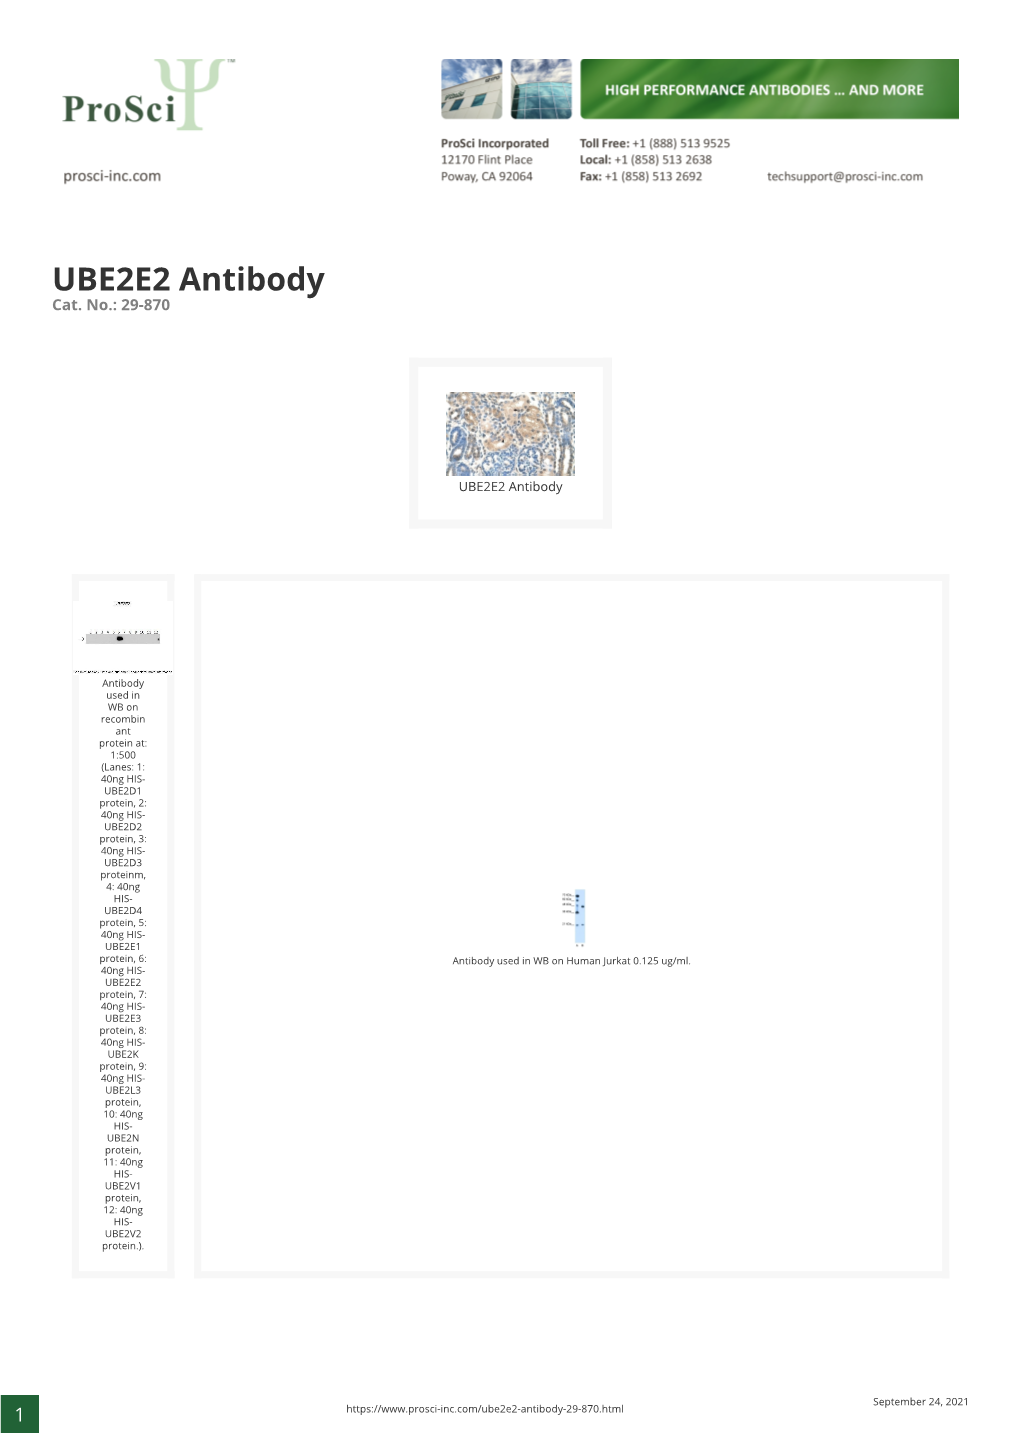 UBE2E2 Antibody Cat